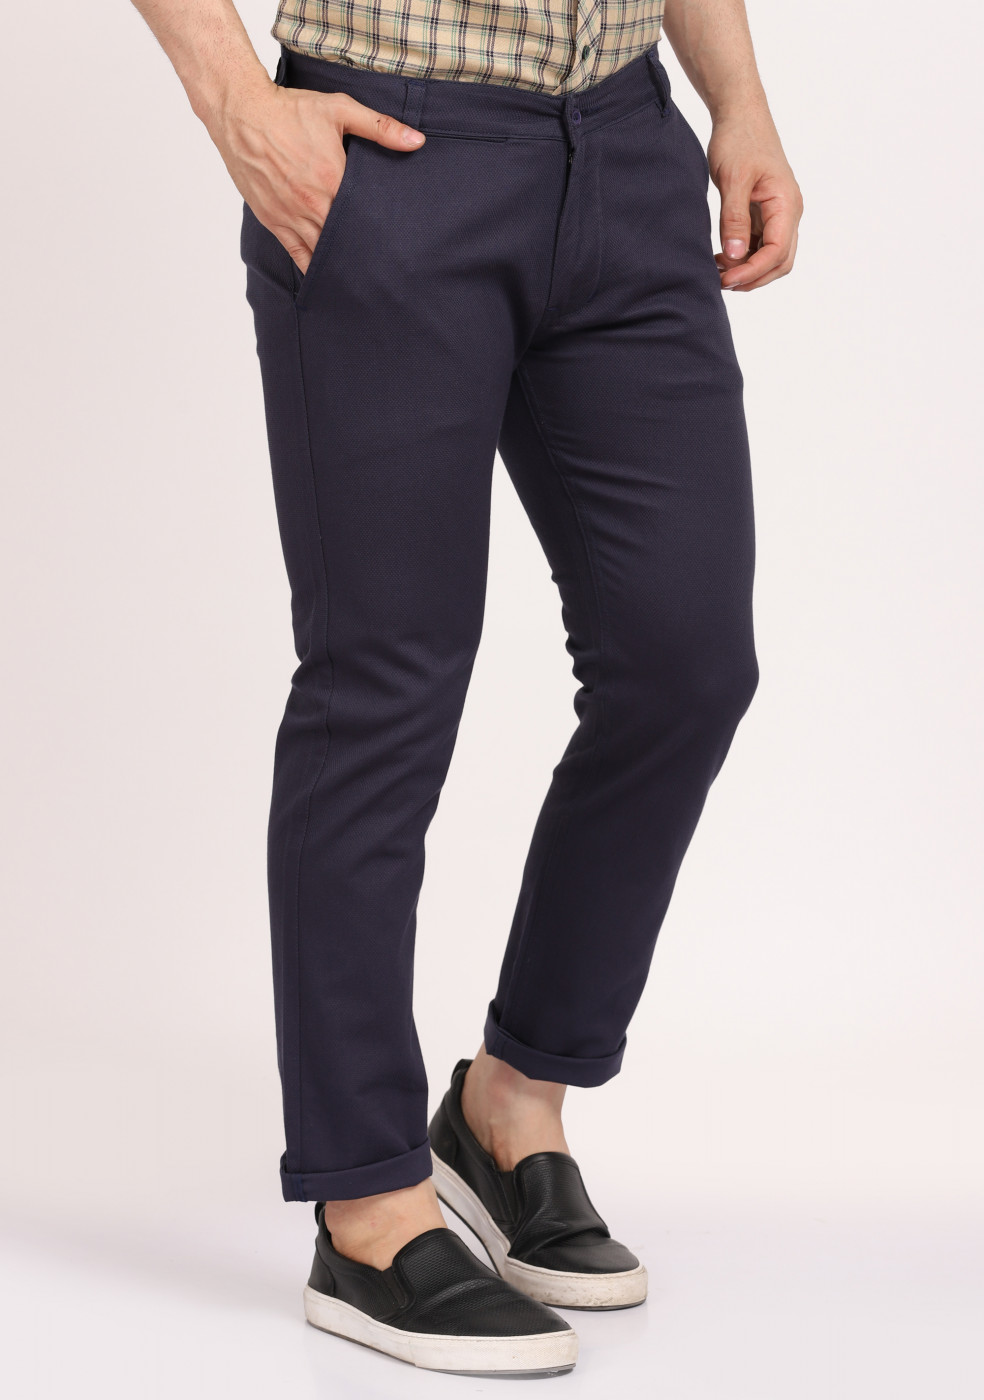 ASHTOM Navy Blue Formal Cotton Trouser Regular Fit For Men